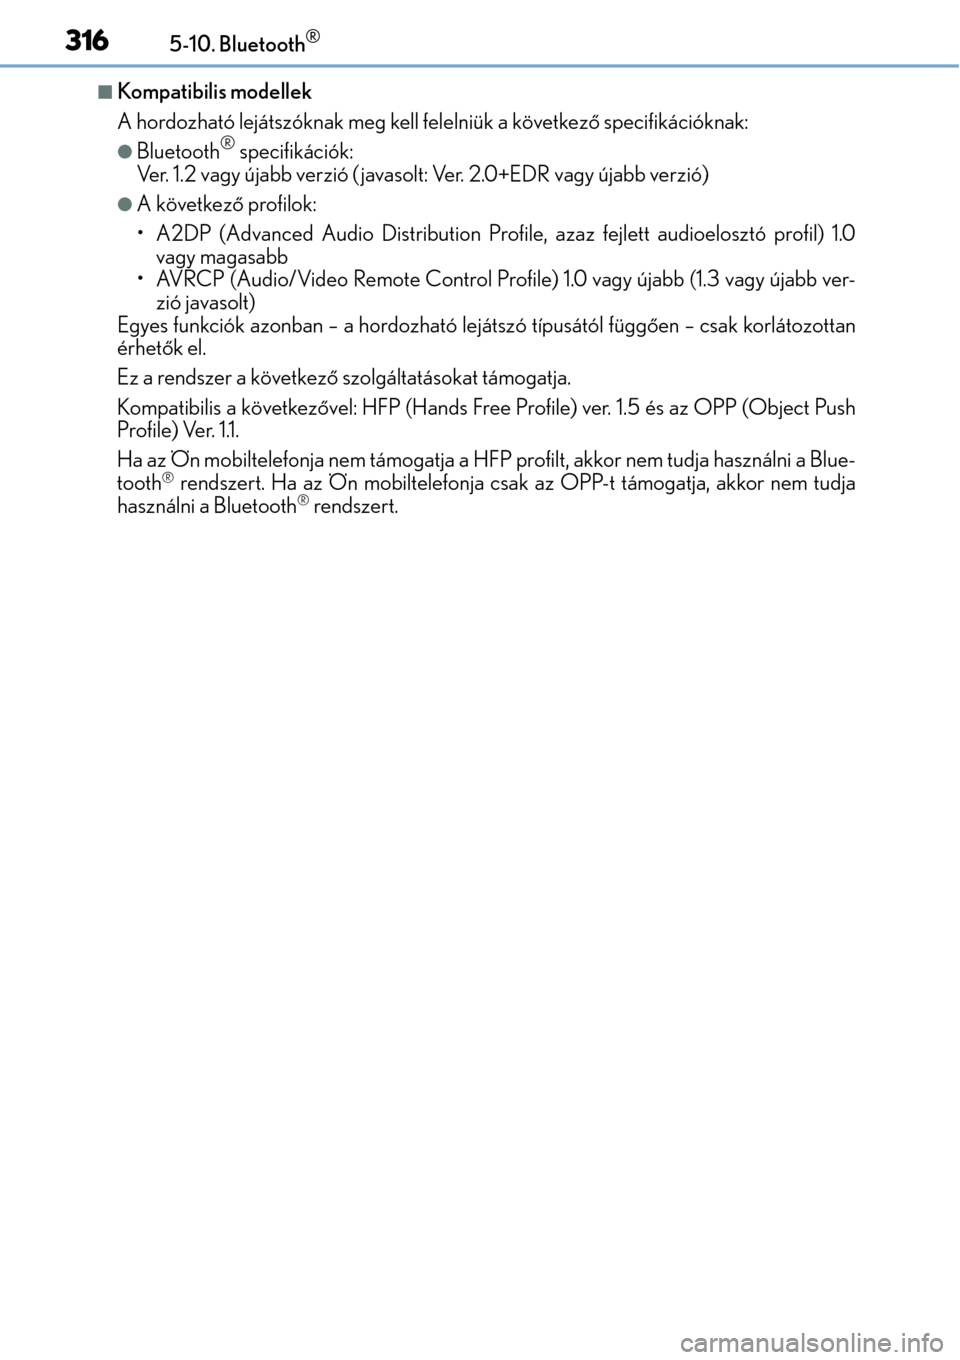 Lexus CT200h 2014  Kezelési útmutató (in Hungarian) 3165-10. Bluetooth®
Kompatibilis modellek
A hordozható lejátszóknak meg kell felelniük a következő specifikációknak:
Bluetooth® specifikációk:
Ver. 1.2 vagy újabb verzió ( javasolt